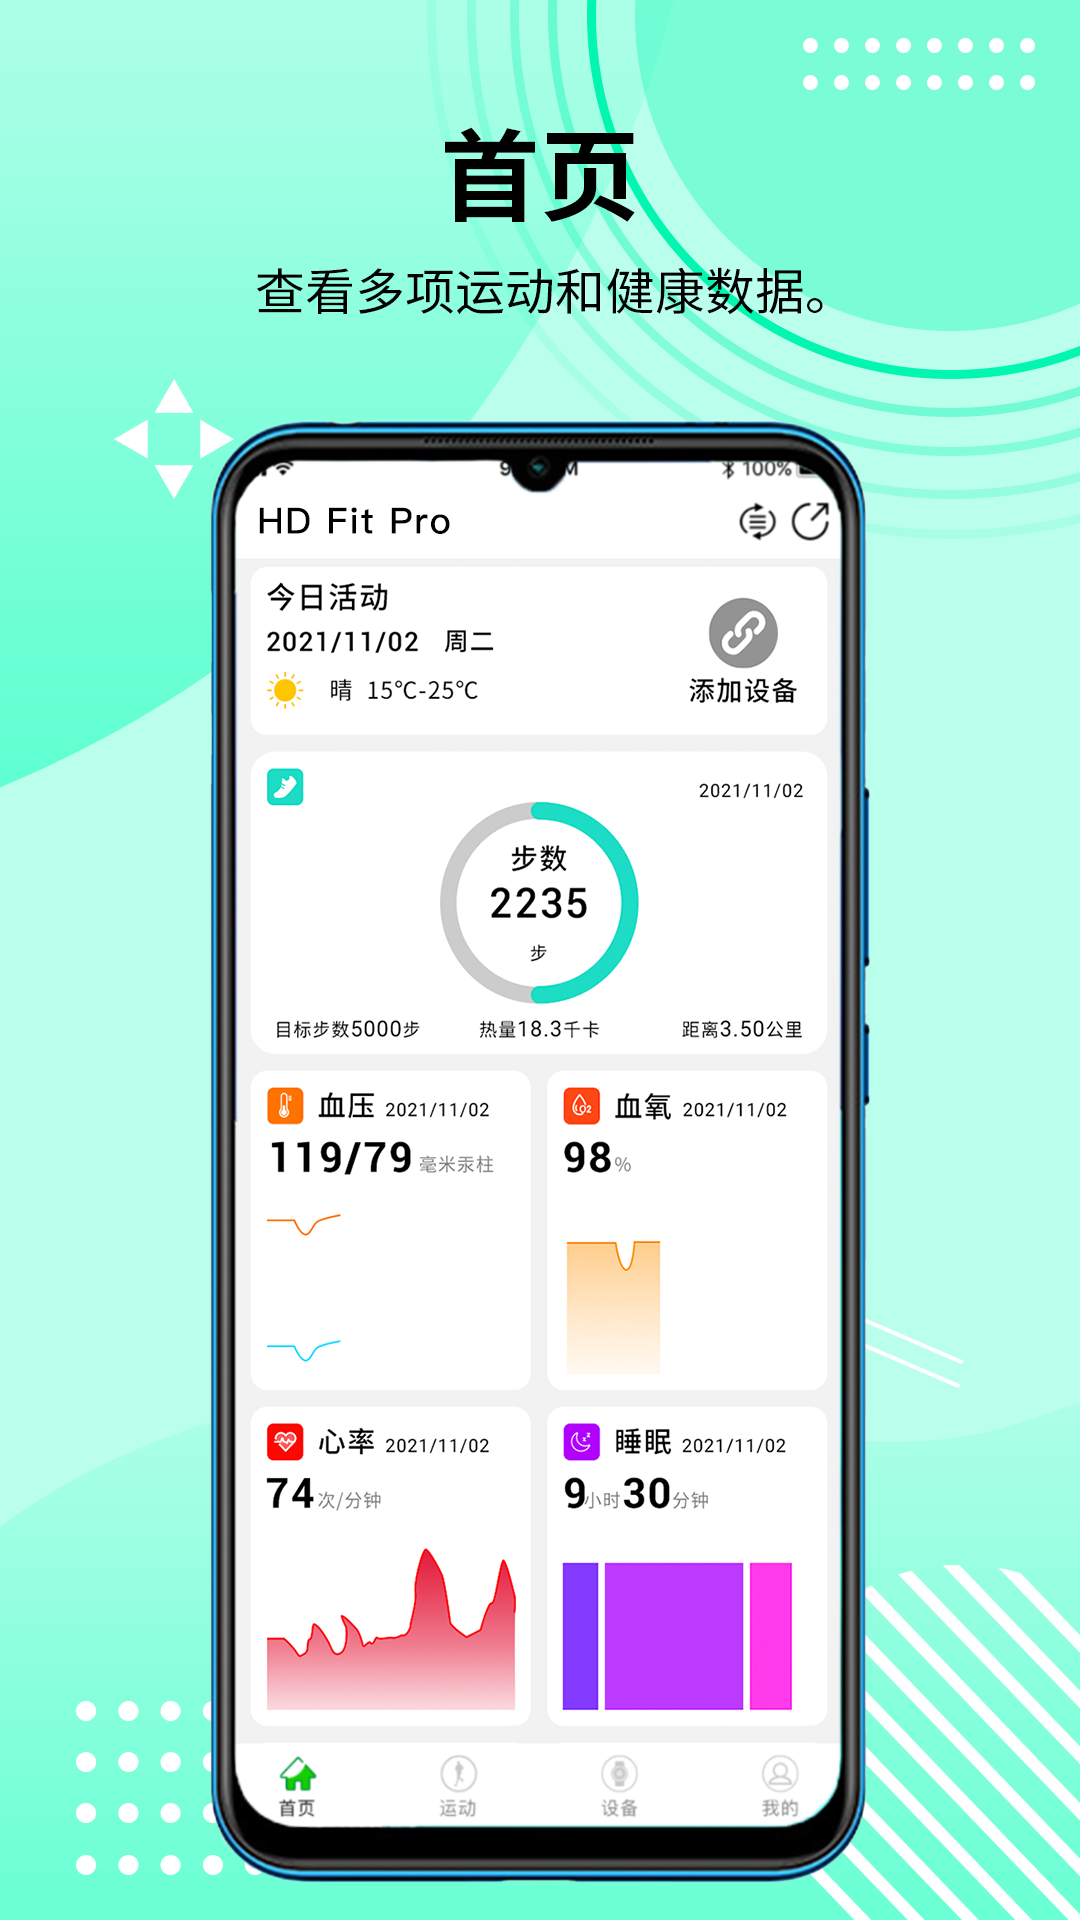 HD Fit Pro智能健康